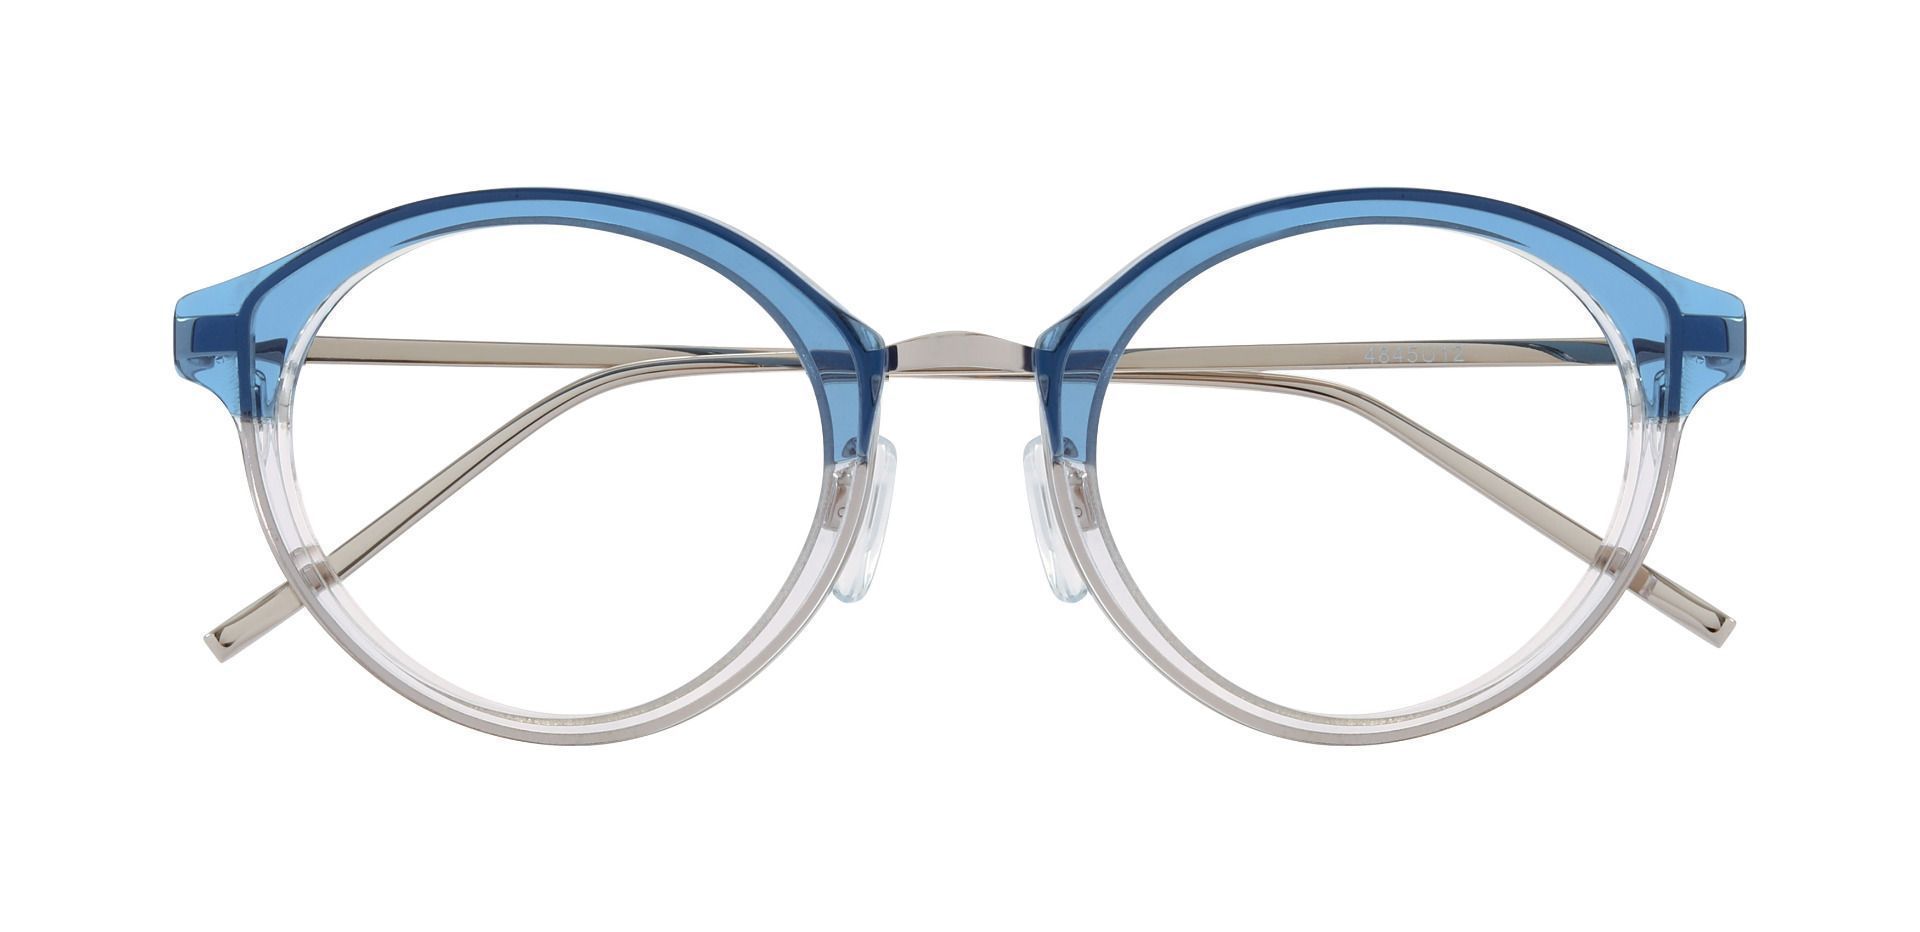 Arima Oval Prescription Glasses - Blue